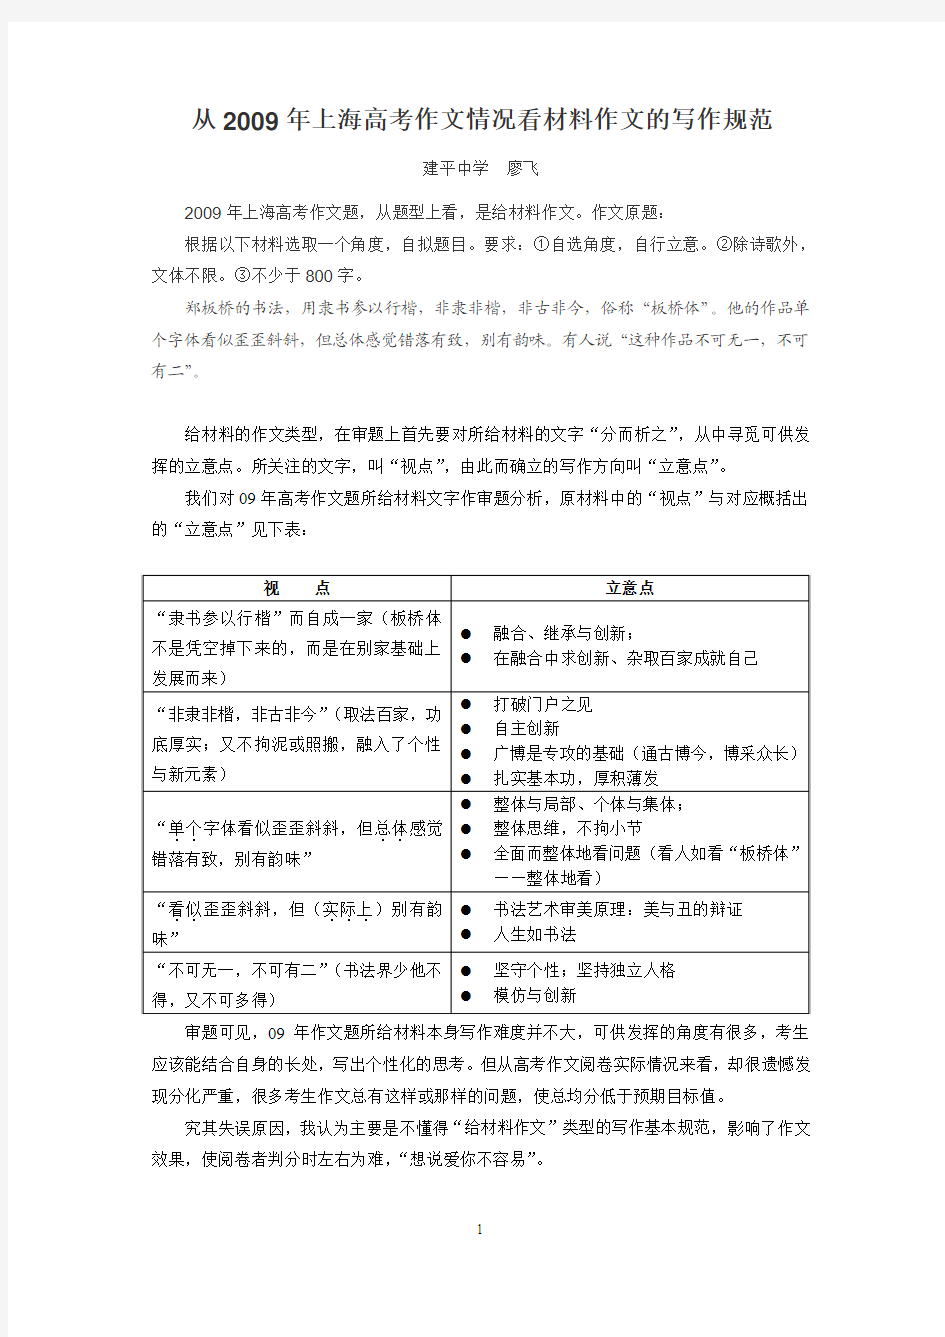 从200考9年上海高考作文情况看材料作文的写作规范试